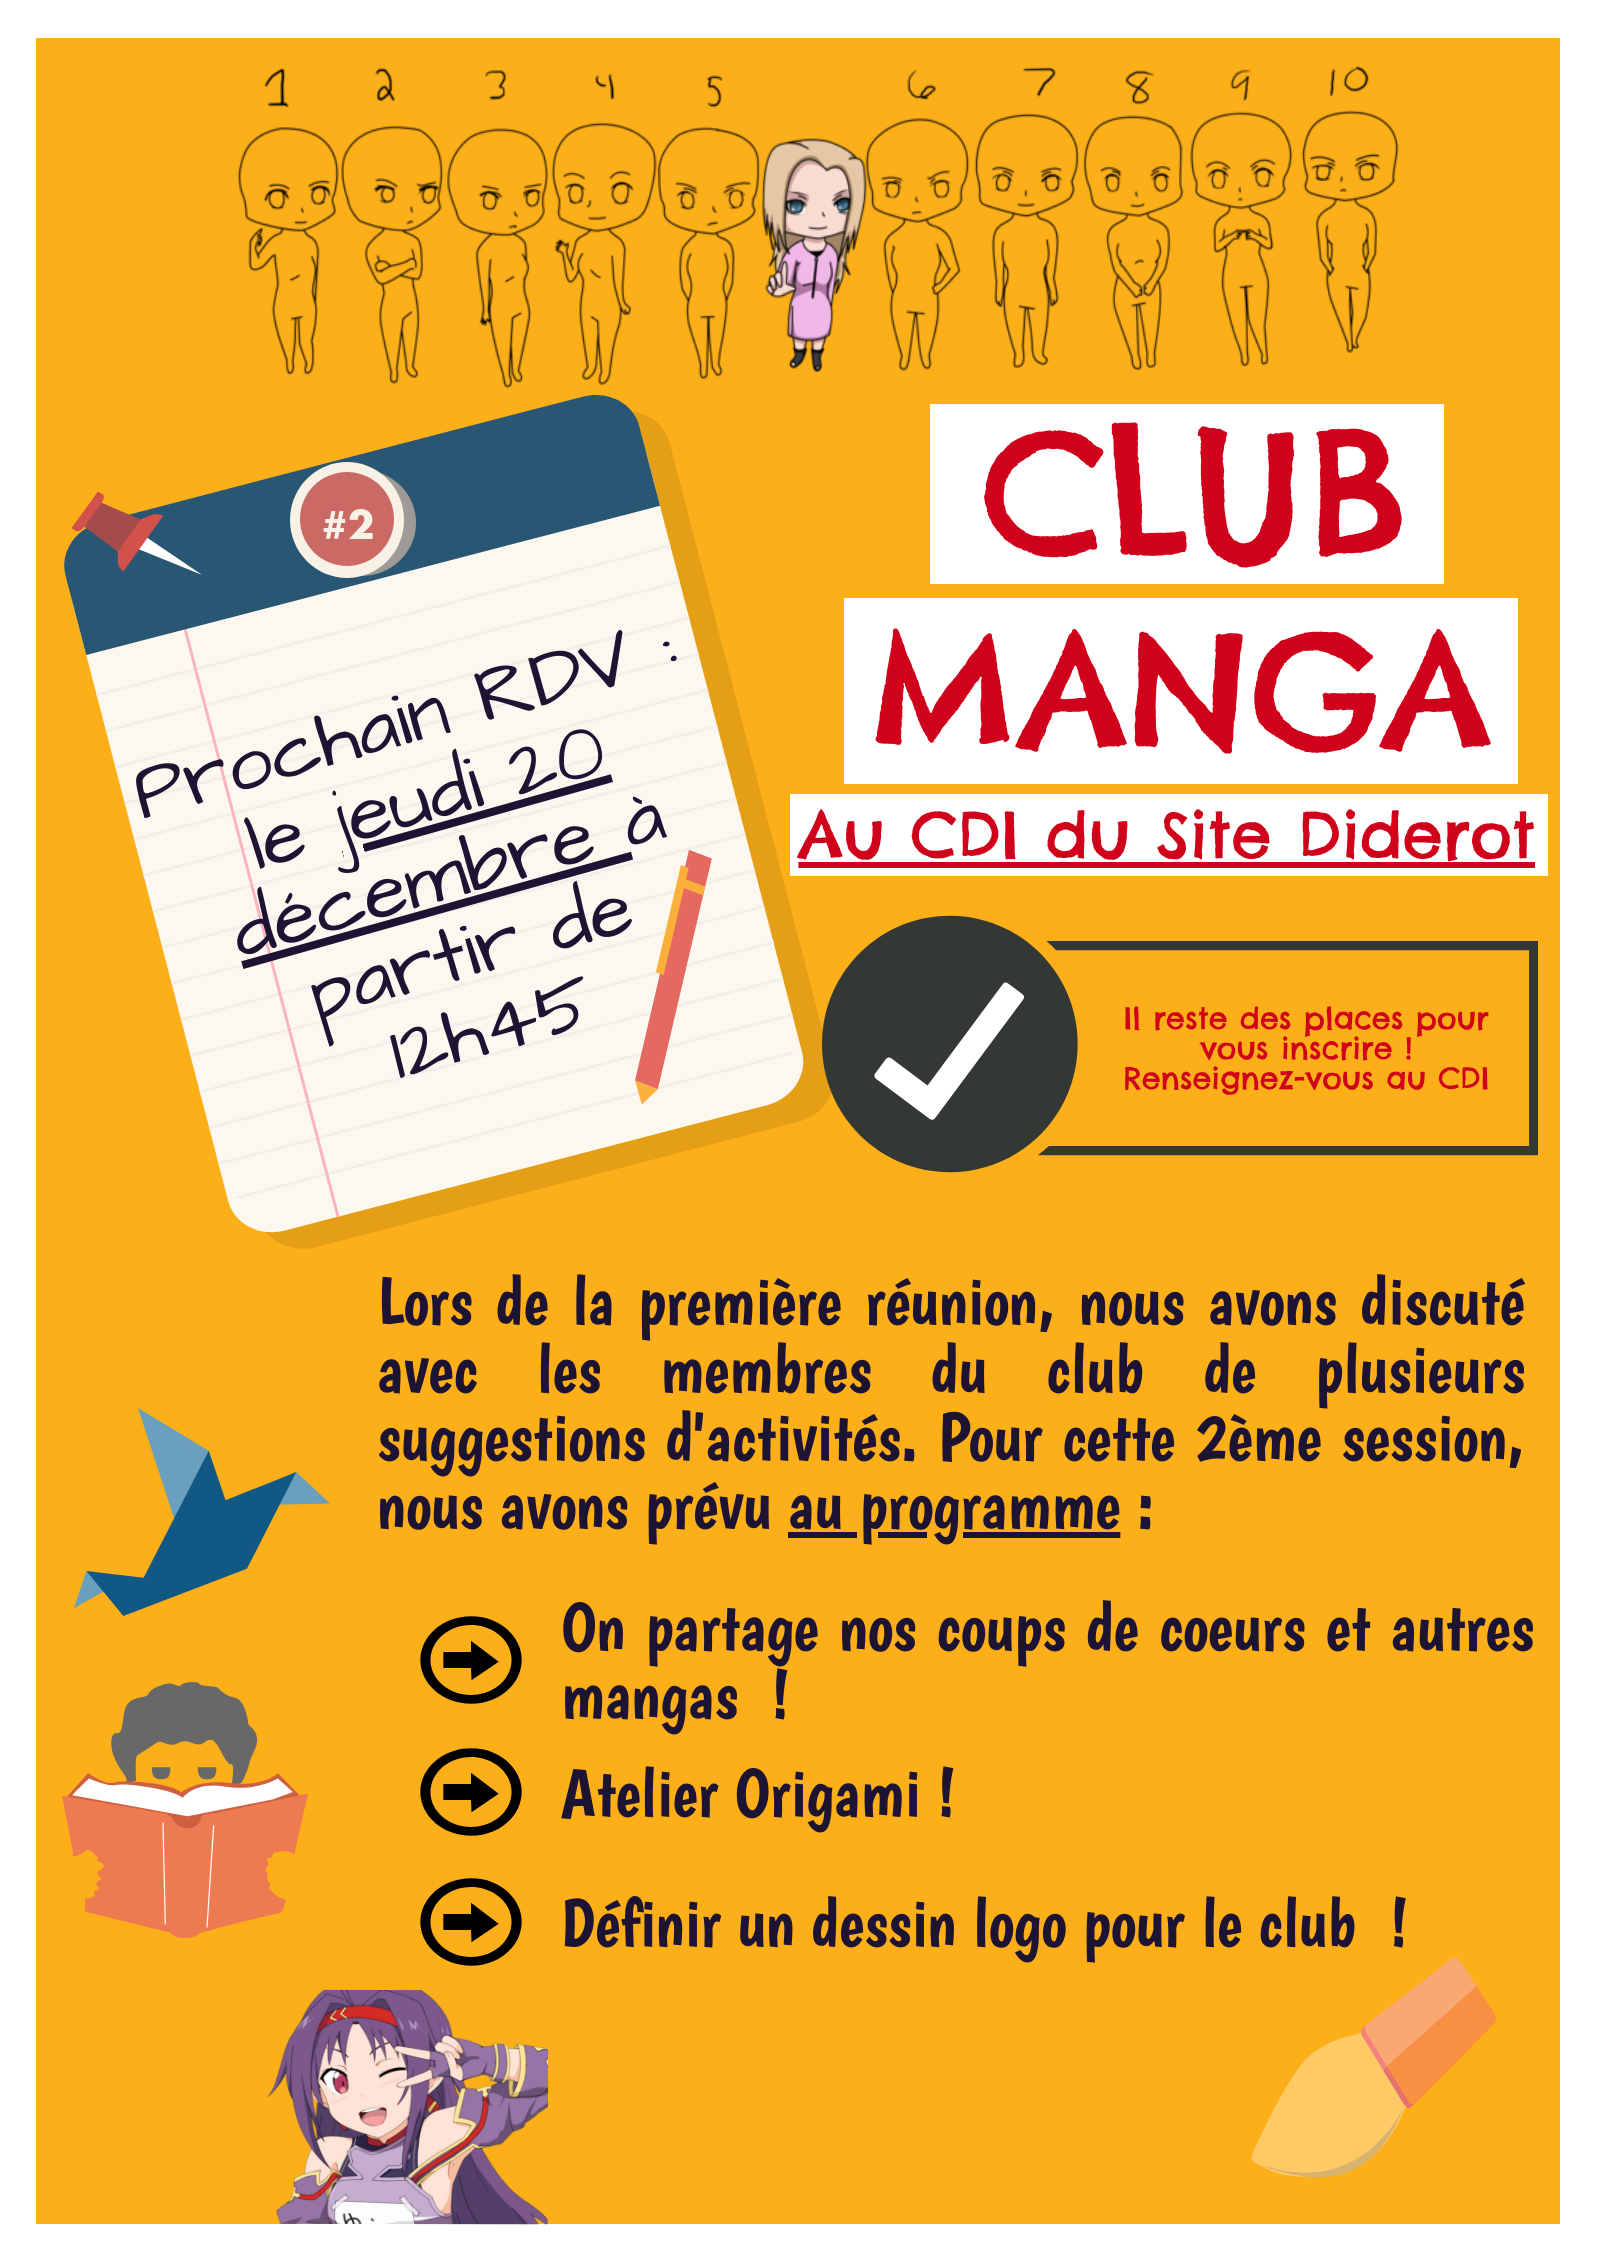 Affiche Club Manga 20.12.18.png